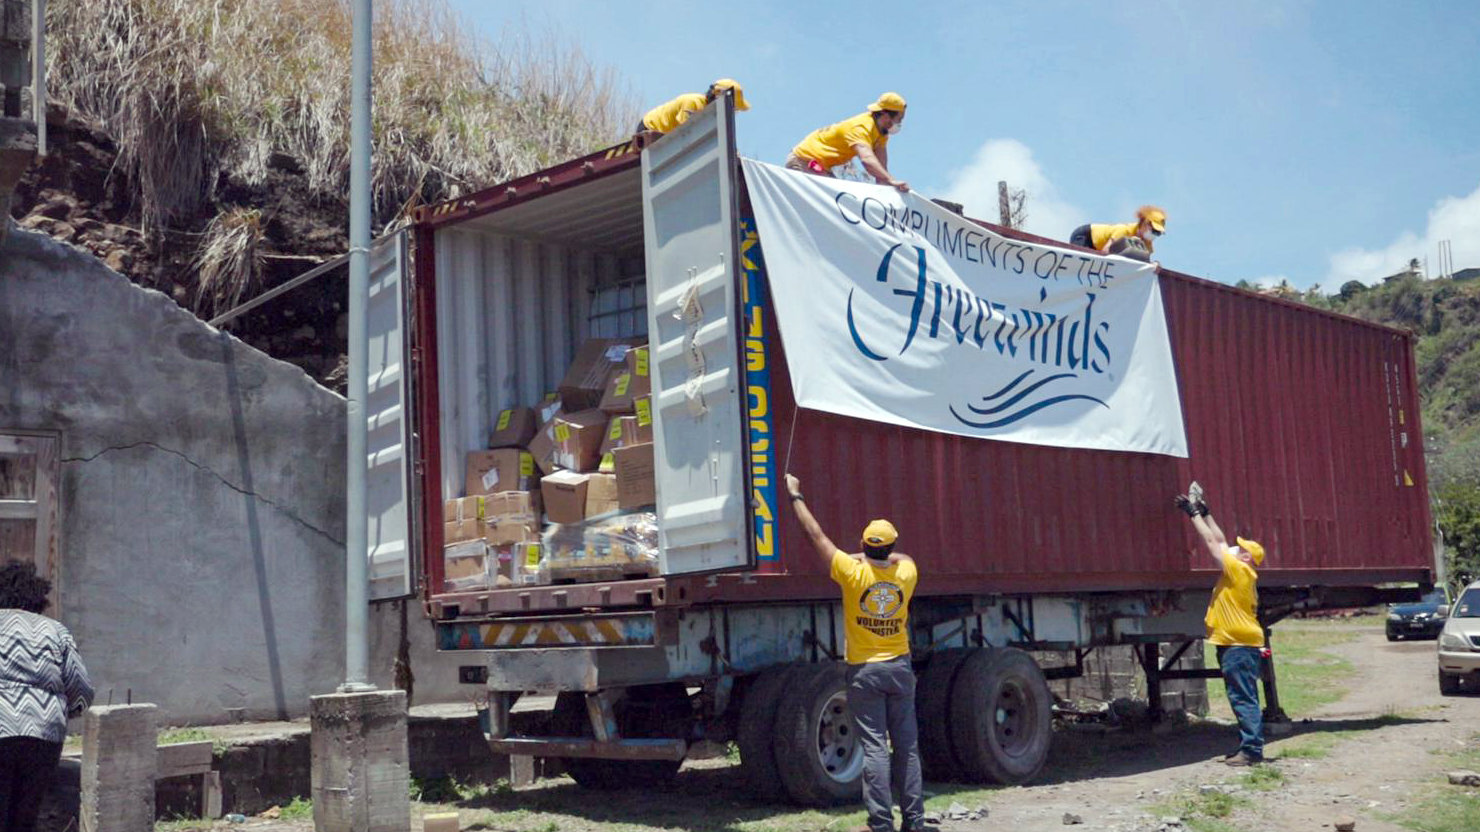 Μια ομάδα των VM ξεφορτώνει ένα κοντέινερ με ζωτικές προμήθειες, τις οποίες έστειλε το Freewinds στο νησί χάρη στην υποστήριξη του IAS.